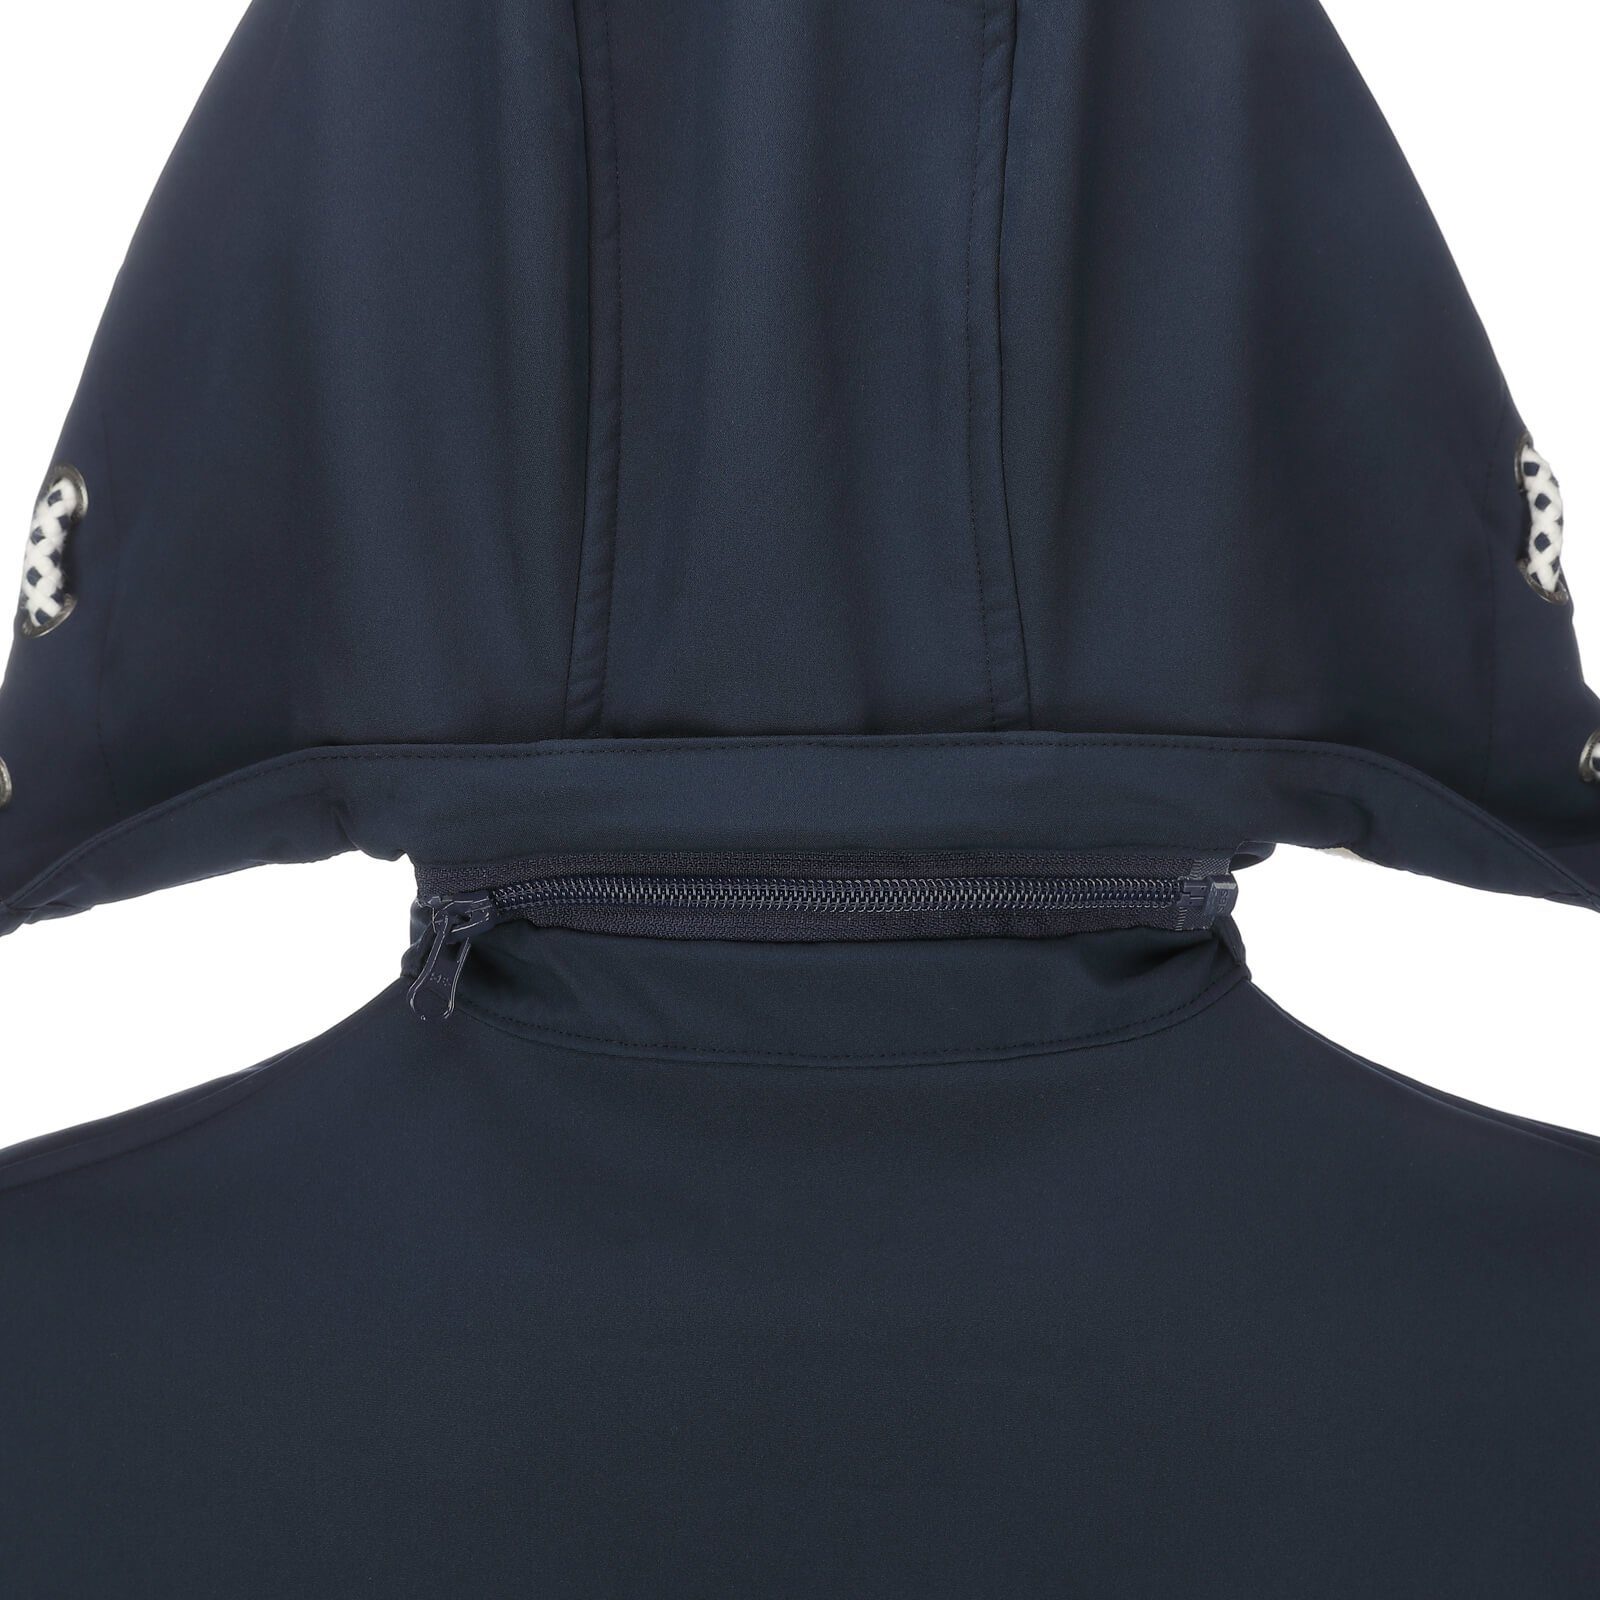 Softshelljacke Softshellmantel Softshell Outdoor-Jacke Rerik Dry - Damen Fashion Mantel navy